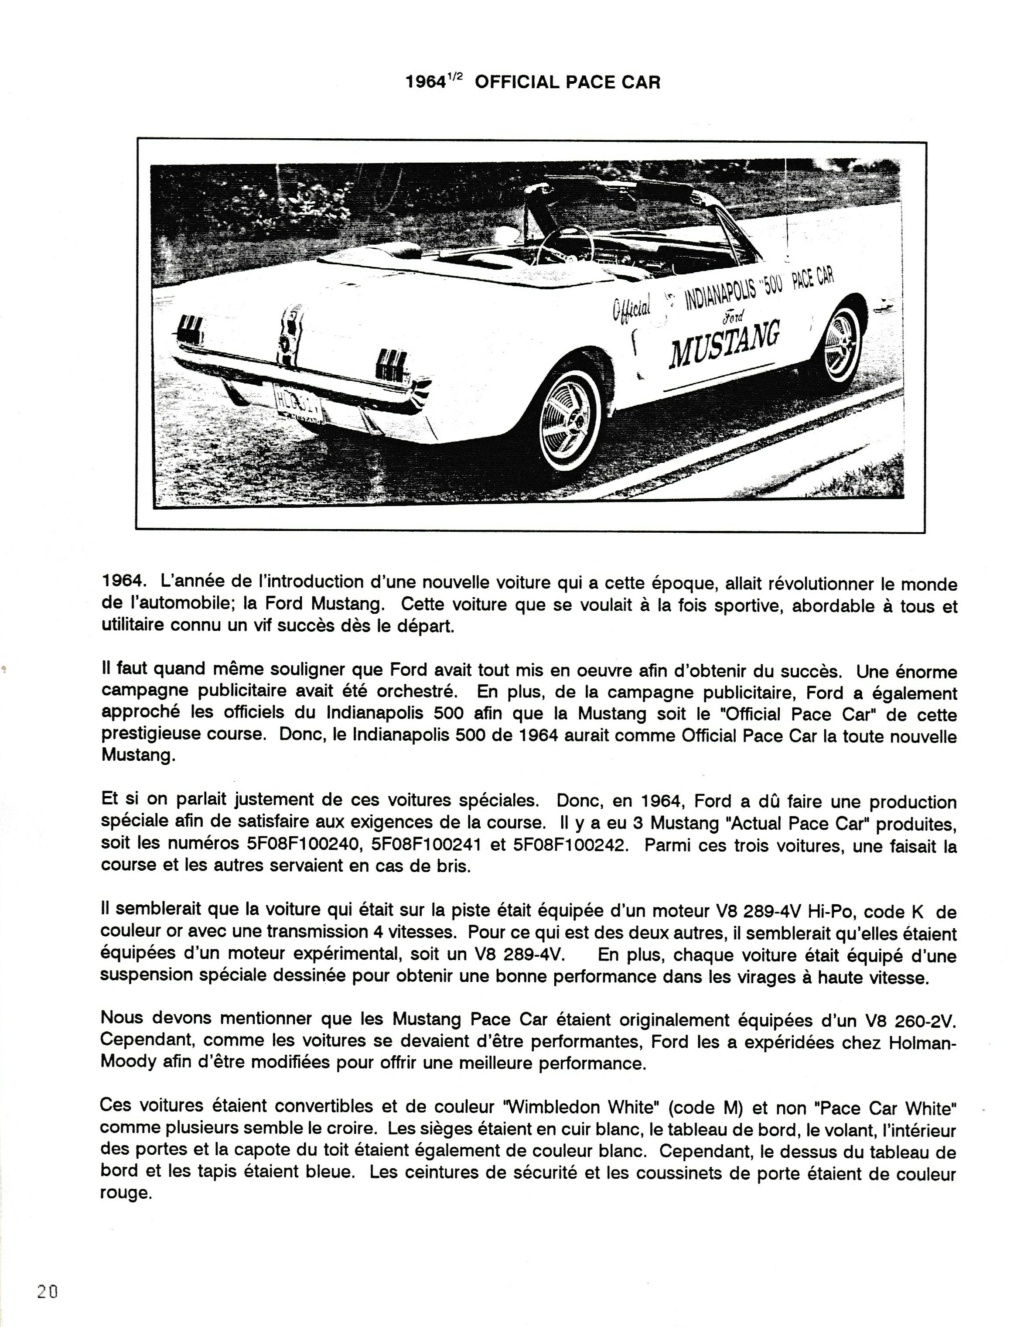 Montréal Mustang dans le temps! 1981 à aujourd'hui (Histoire en photos) - Page 8 Img_2427